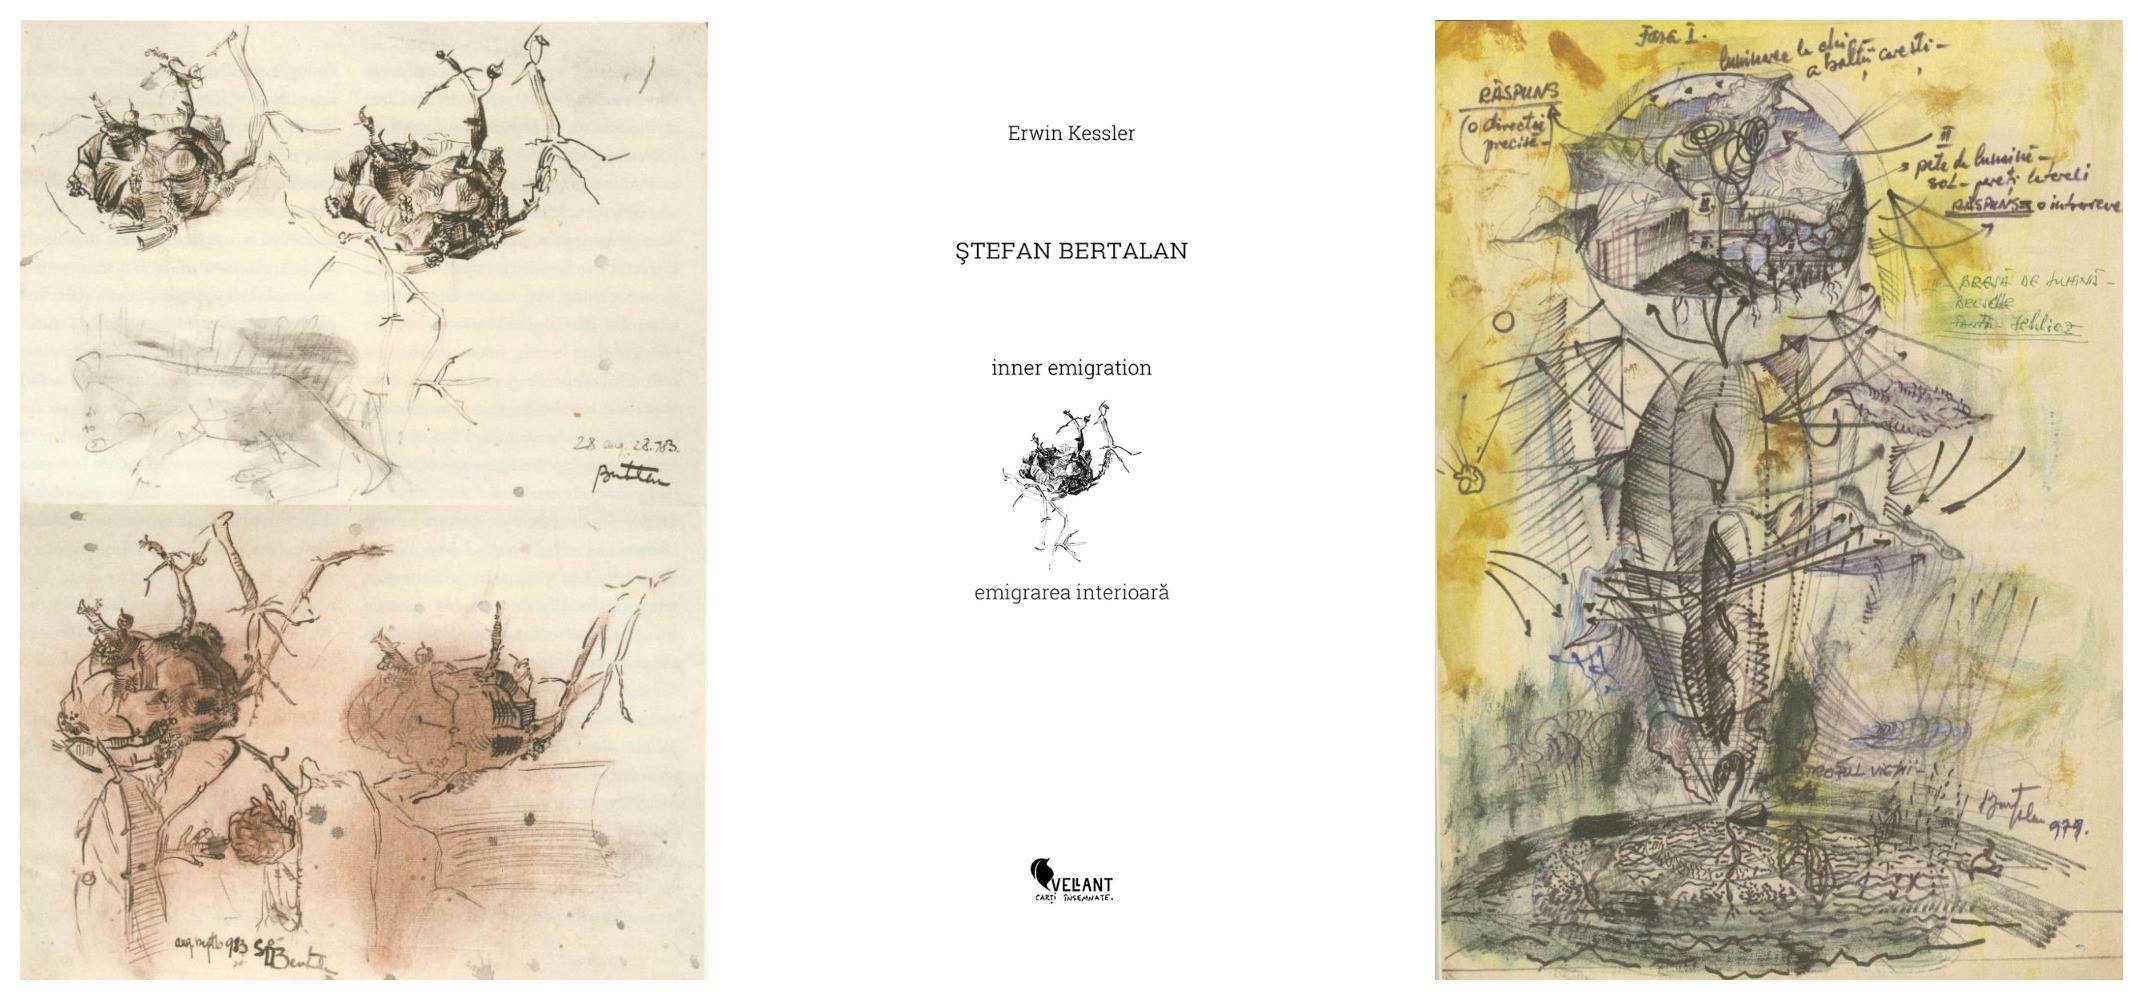 Lansare album: Ştefan Bertalan. Emigrarea interioară | Erwin Kessler